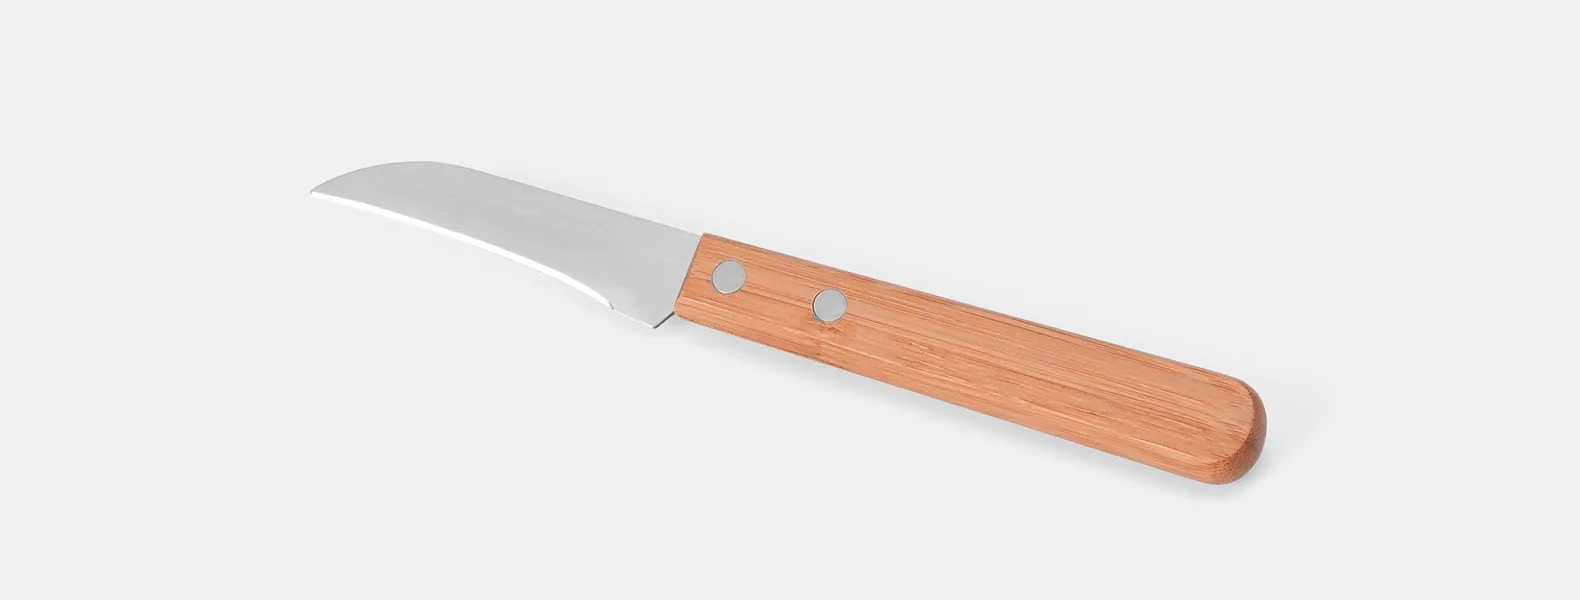 Kit composto por seis peças com cabos em bambu e lâminas em aço Inox com rebites resistentes, sendo uma faca 8”, uma faca 7”, uma faca 5” para desossar, um cutelo 6”, uma faca 4” de frutas e uma faca 3” de legumes. Estão organizados em fita elástica preta no interior de um estojo.